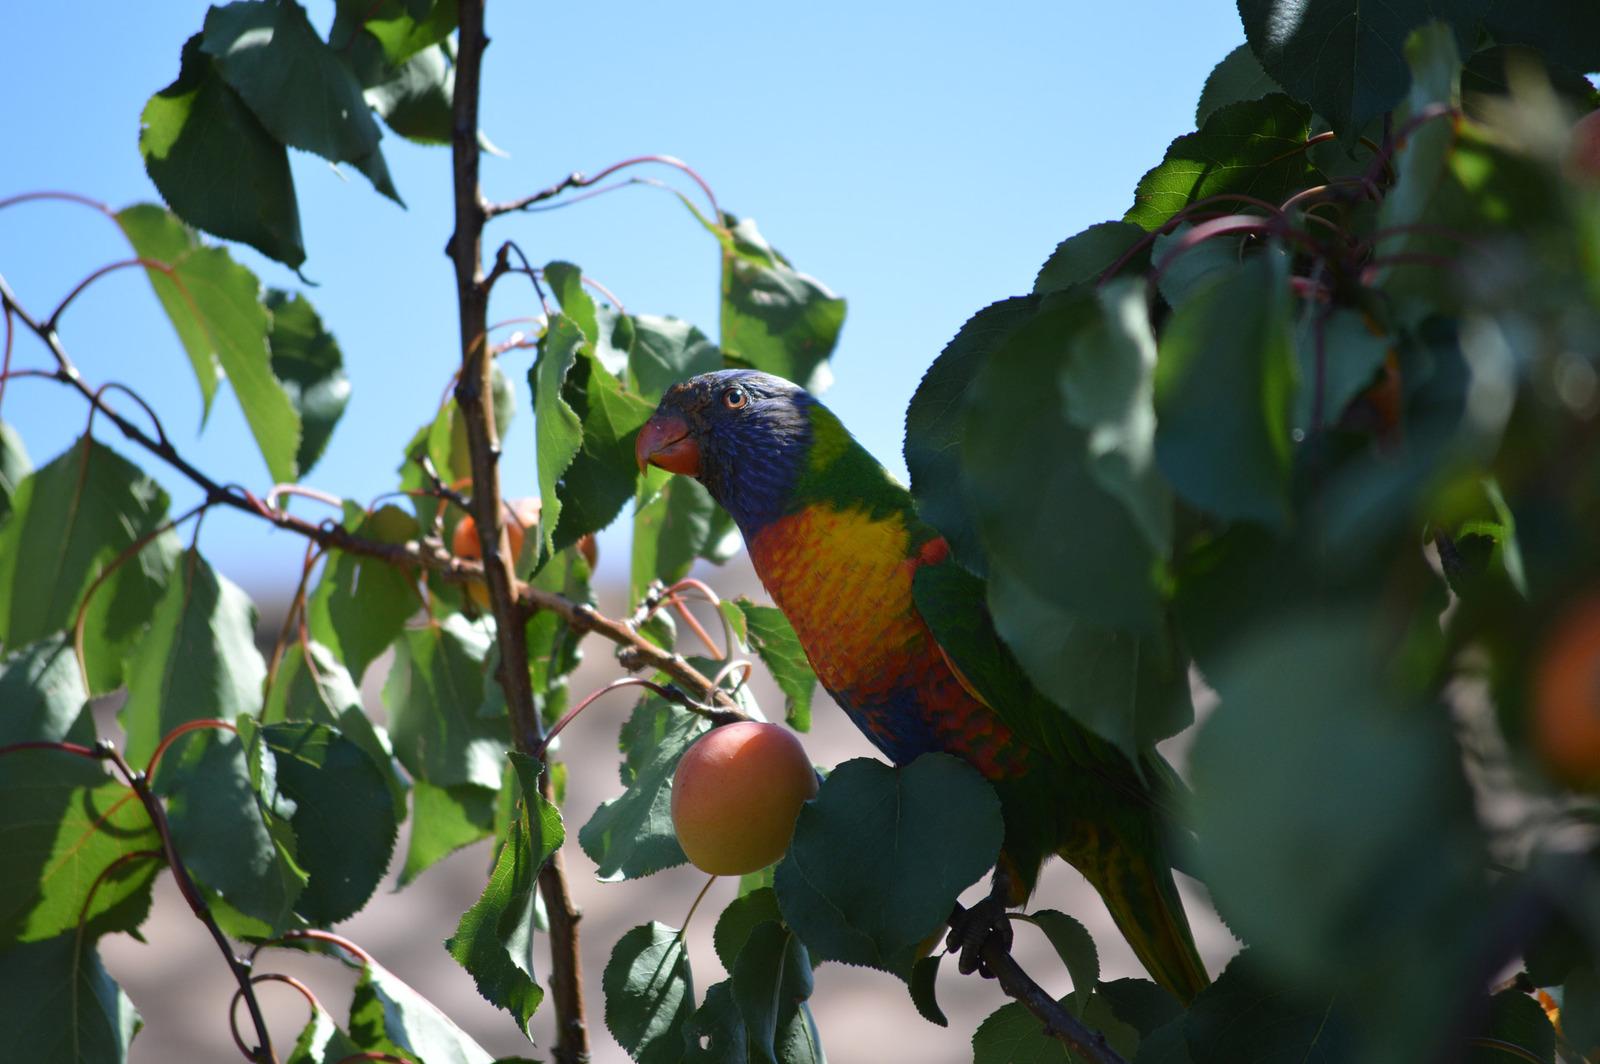 Rainbow Lorikeet in a Fruit Tree